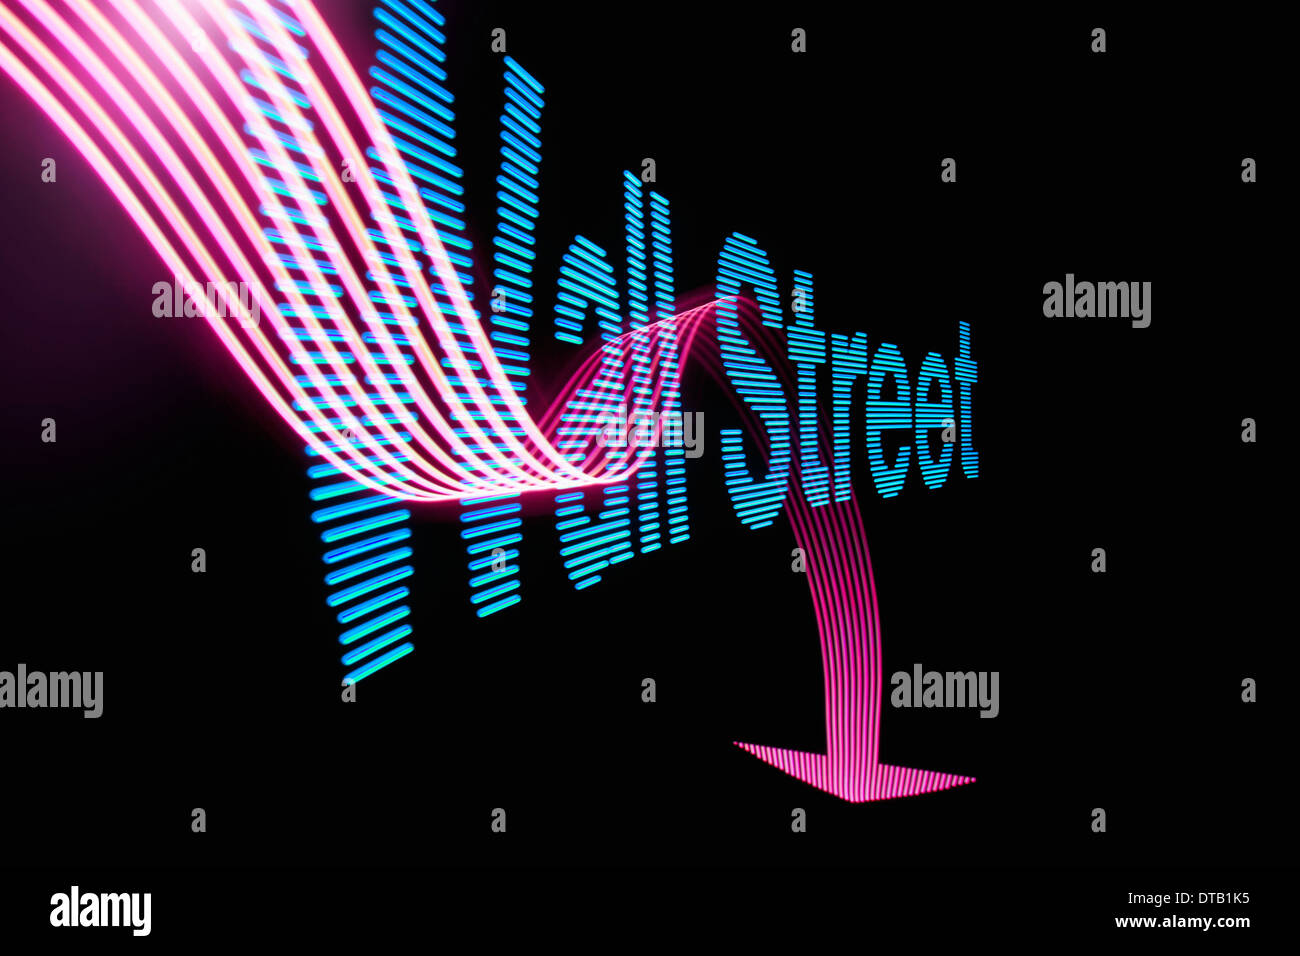 Flèche vers le signe et le texte "Wall Street" avec effet de lumière Banque D'Images